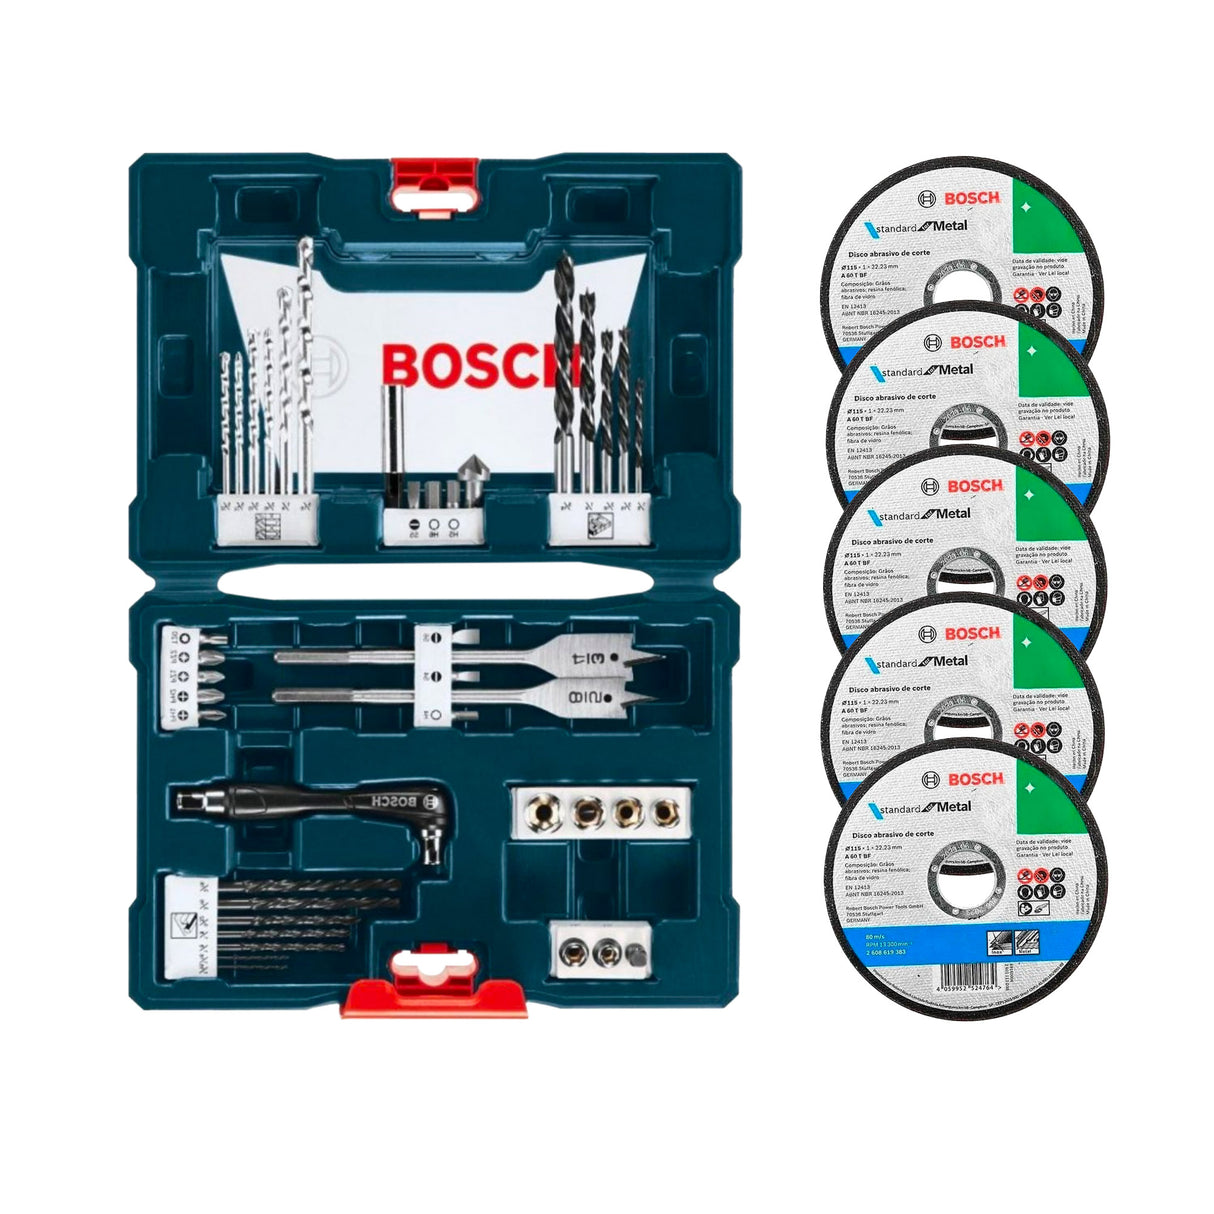 Combo Rotomartillo Bosch GSB13RE + Esmeriladora Angular Bosch GWS 700 + Accesorios